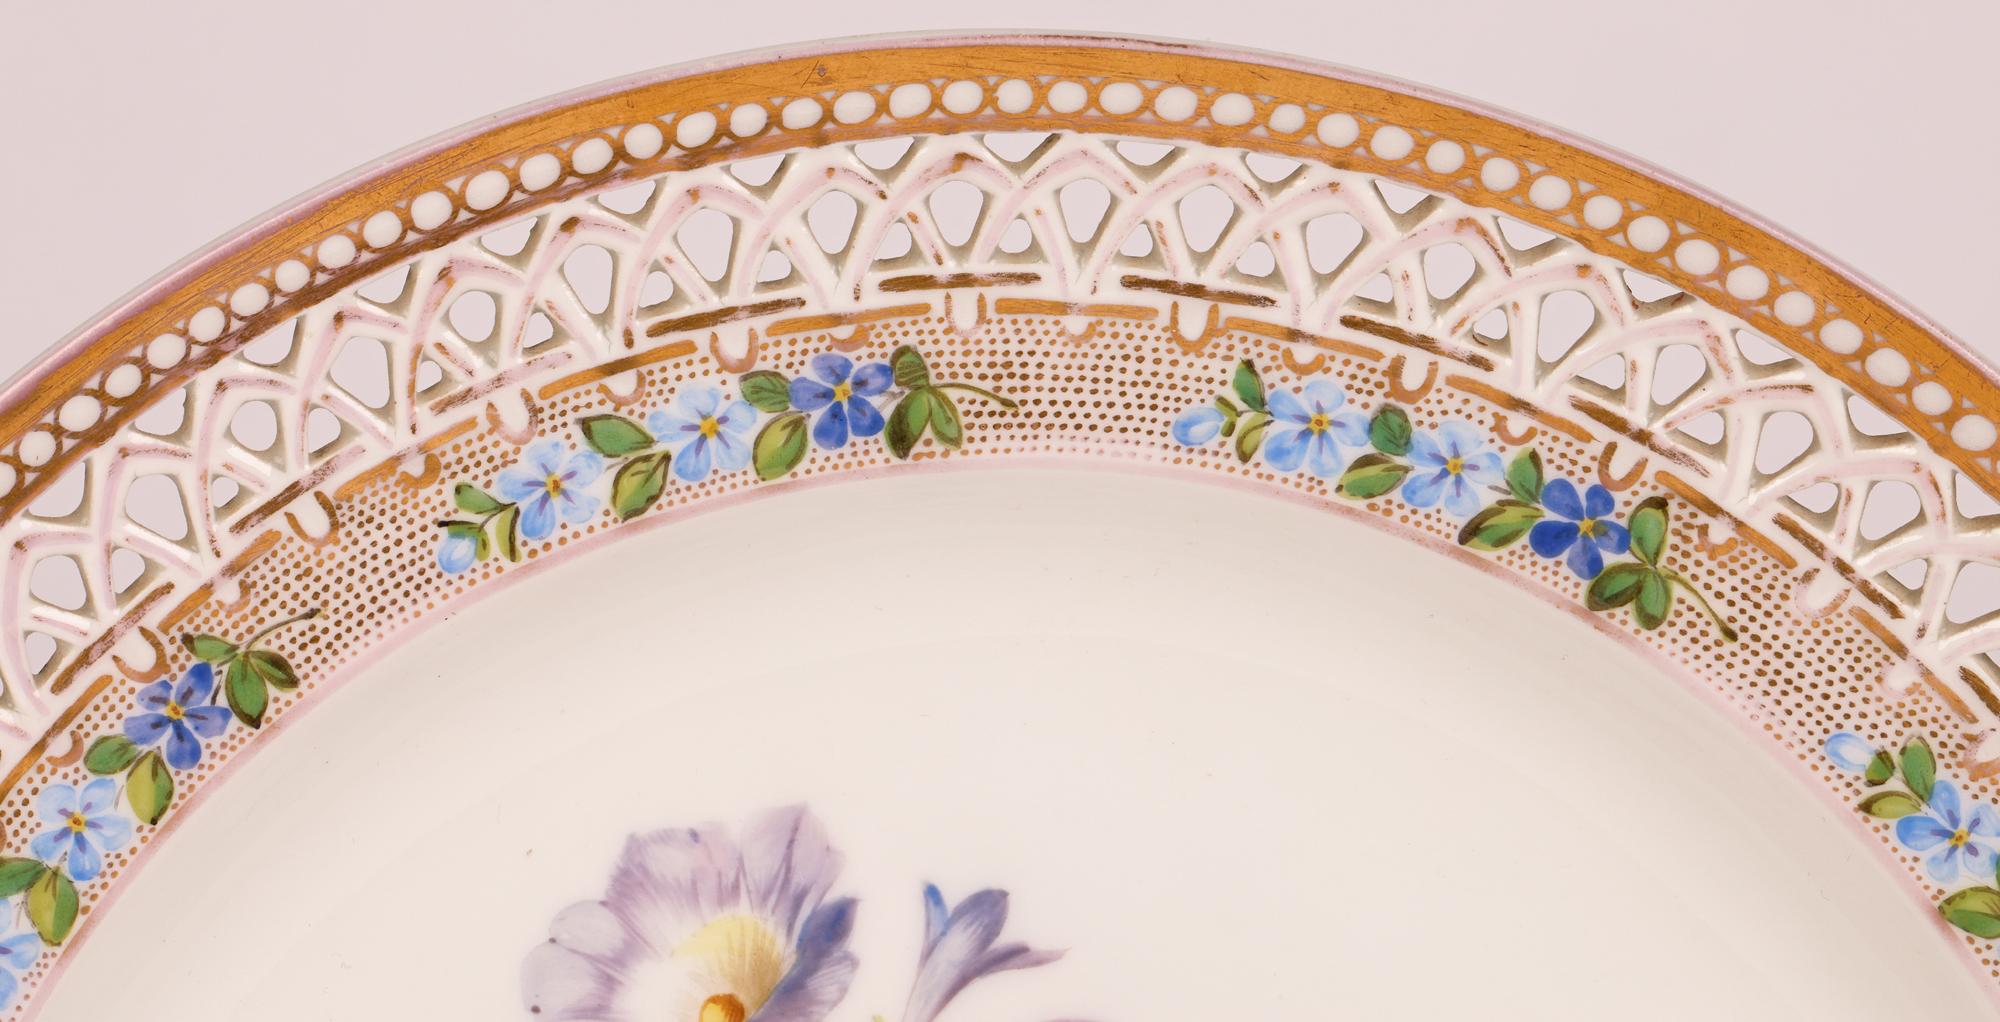 Royal Porcelain Factory Berlin Porcelain Pierced Edge Floral Painted Cabinet Pla For Sale 11